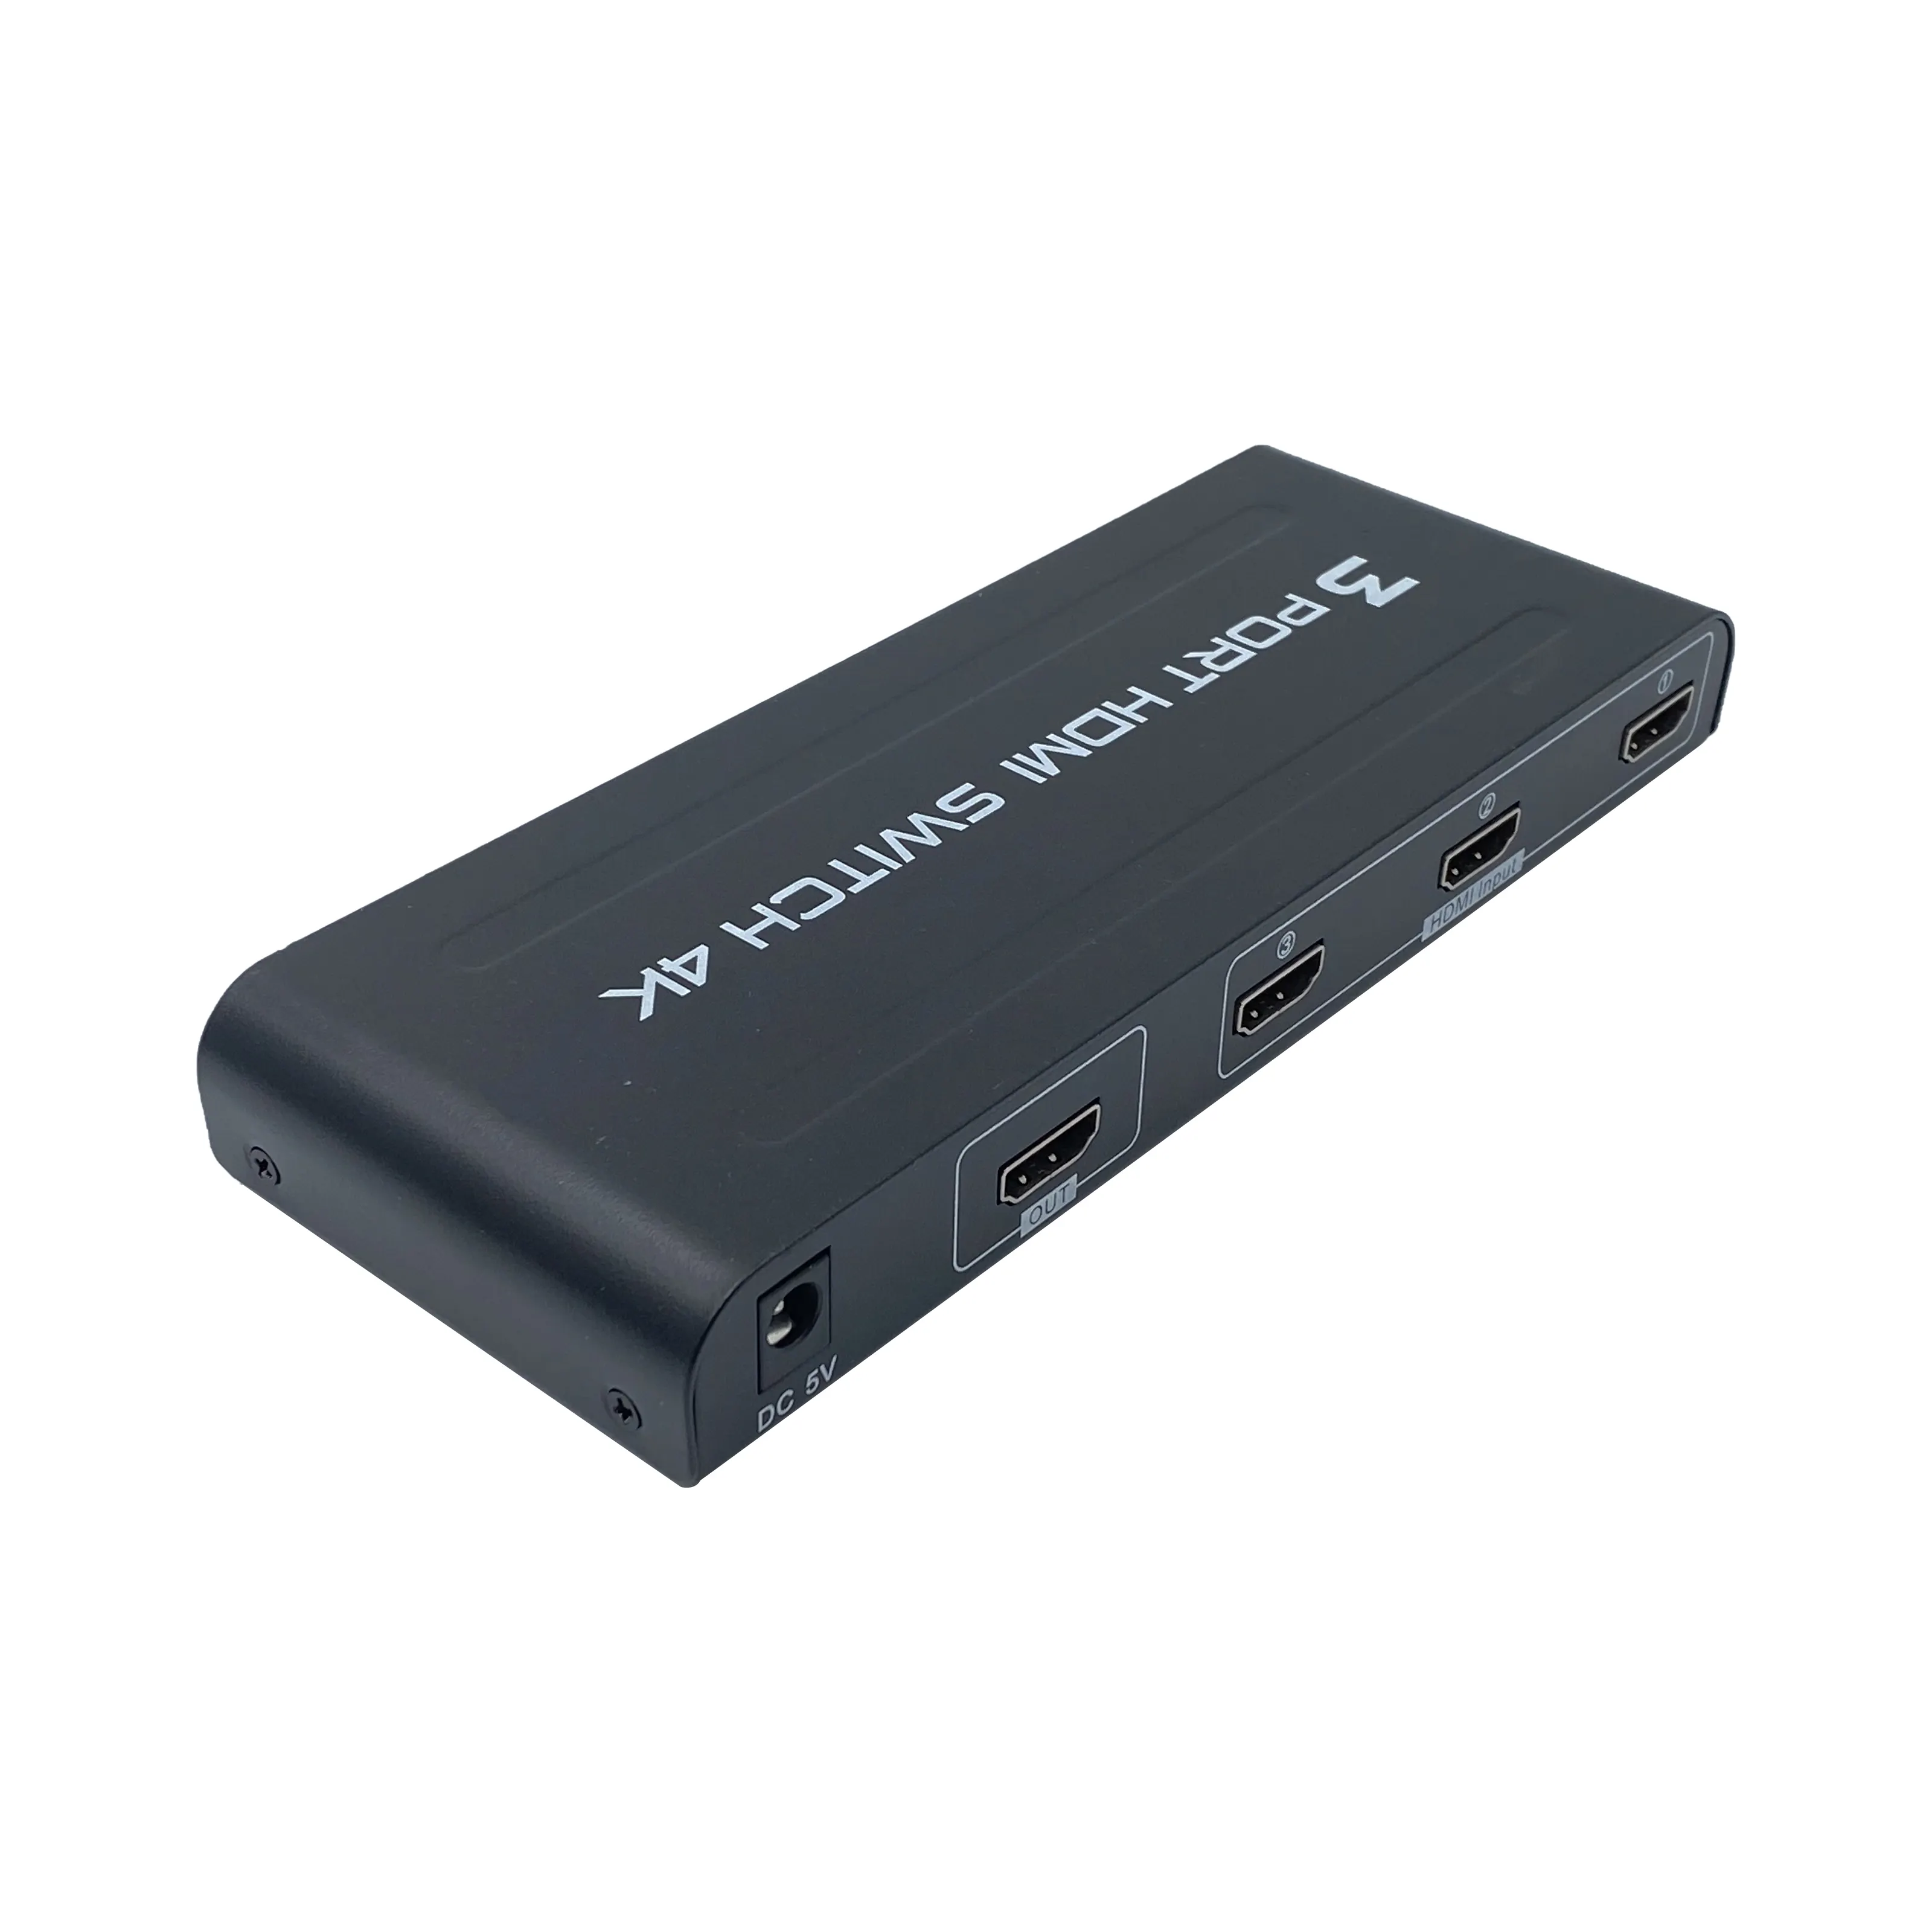 Switch-Box 3 × 1 Port 4 K HDMI 1.4 Schwarze PVC-Kartonbox Aoc Monitor auf Lager 3 in 1 OUT 4 K HDMI-SCHALTER Nickelplattiert